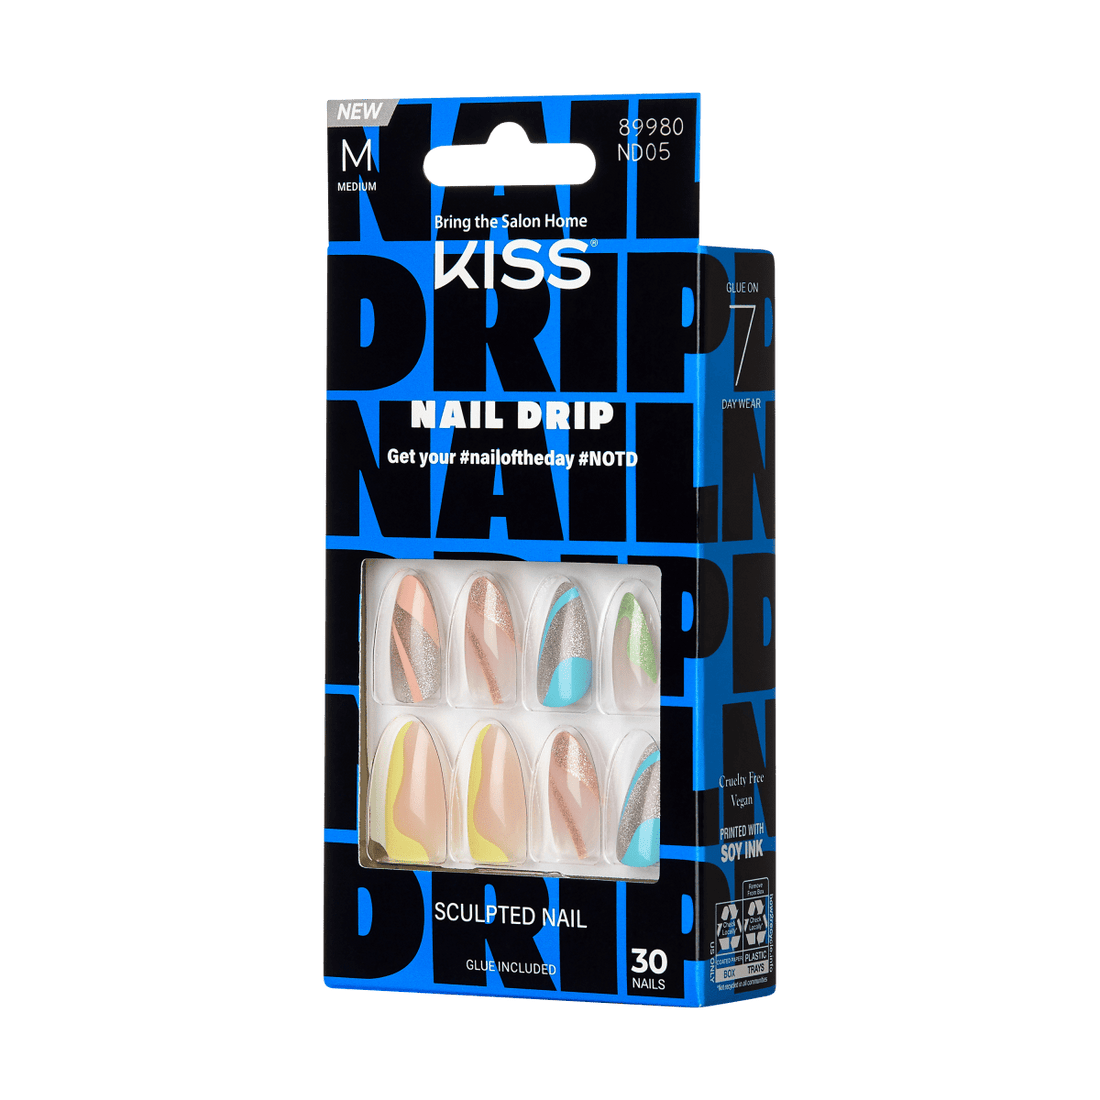 KISS Nail Drip - Drip In